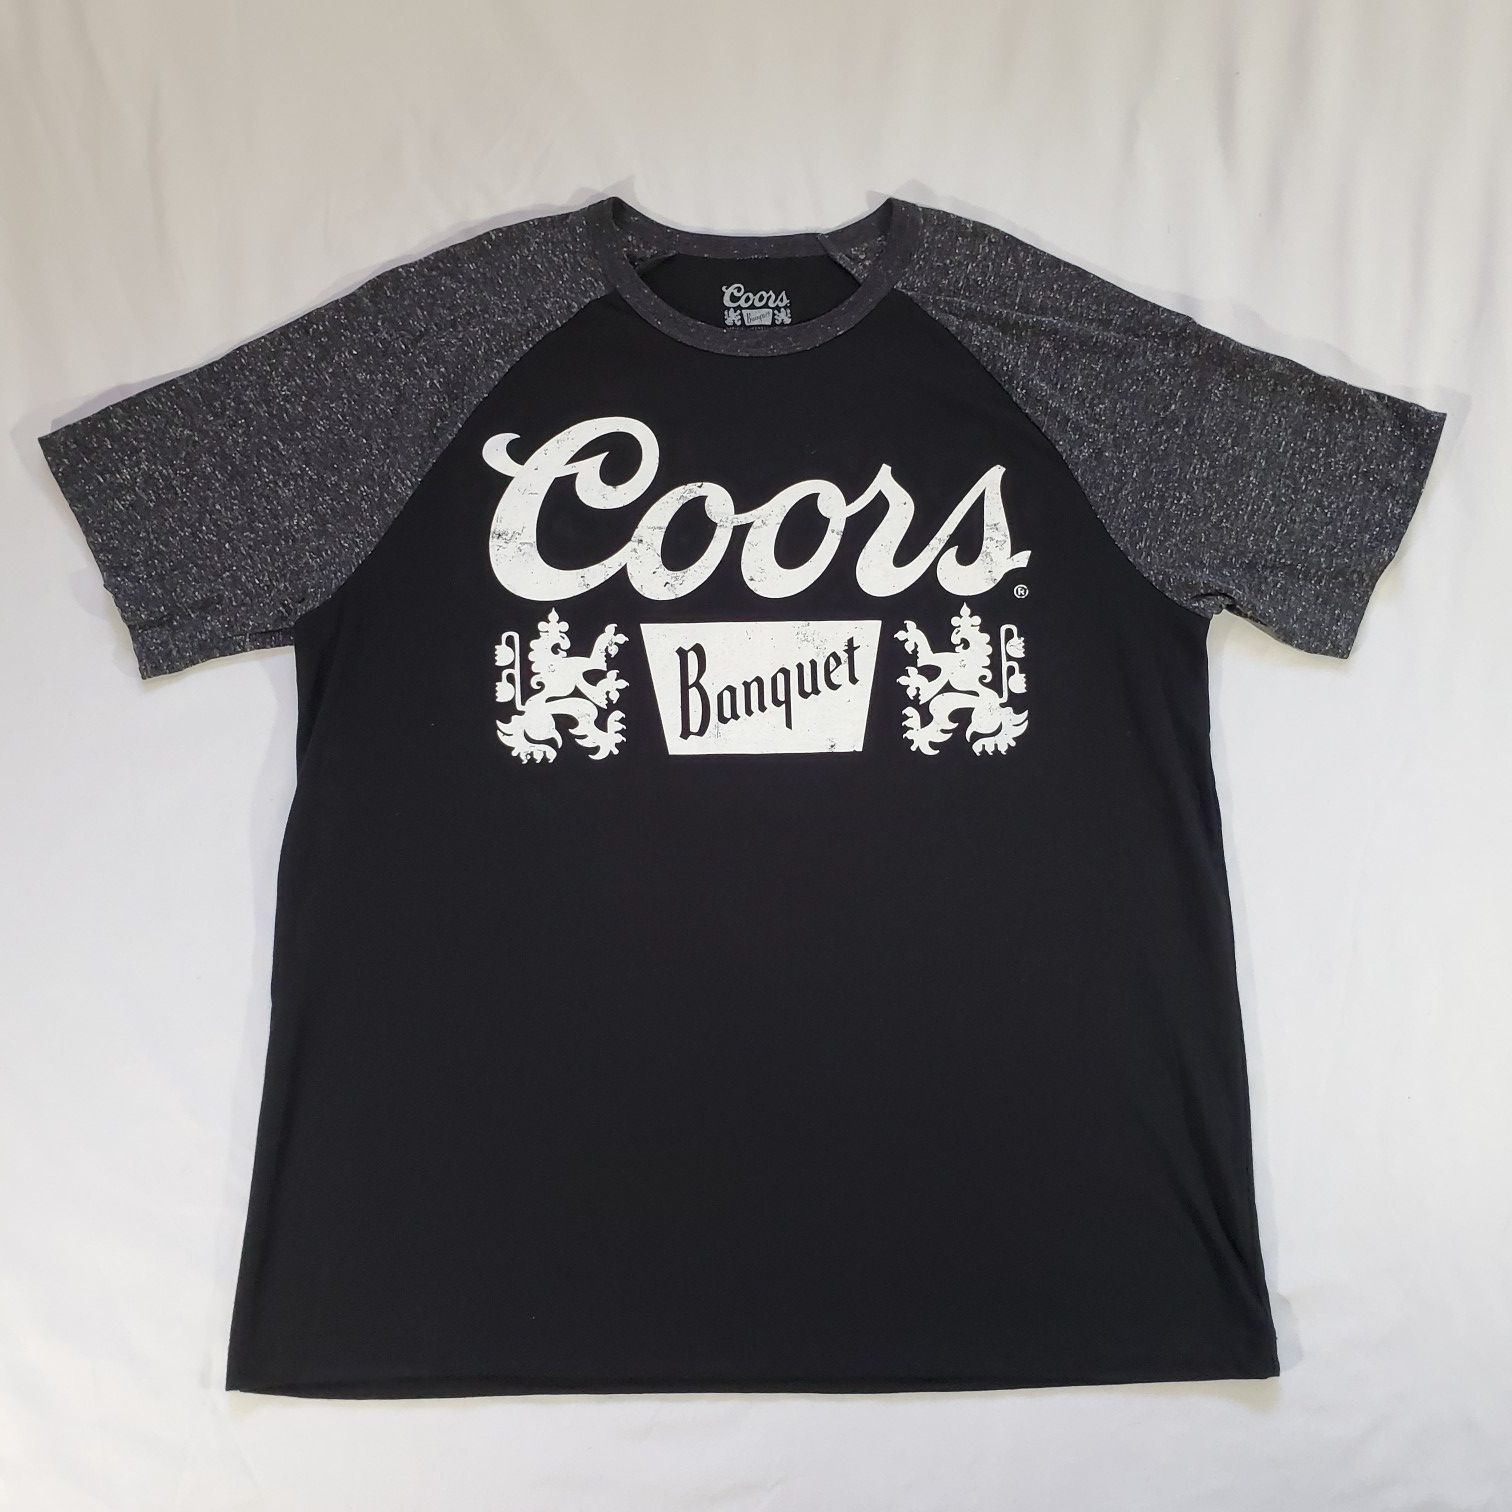 NEW 2XL Coors Banquet Beer Raglan Baseball T-shirt Black And Gray